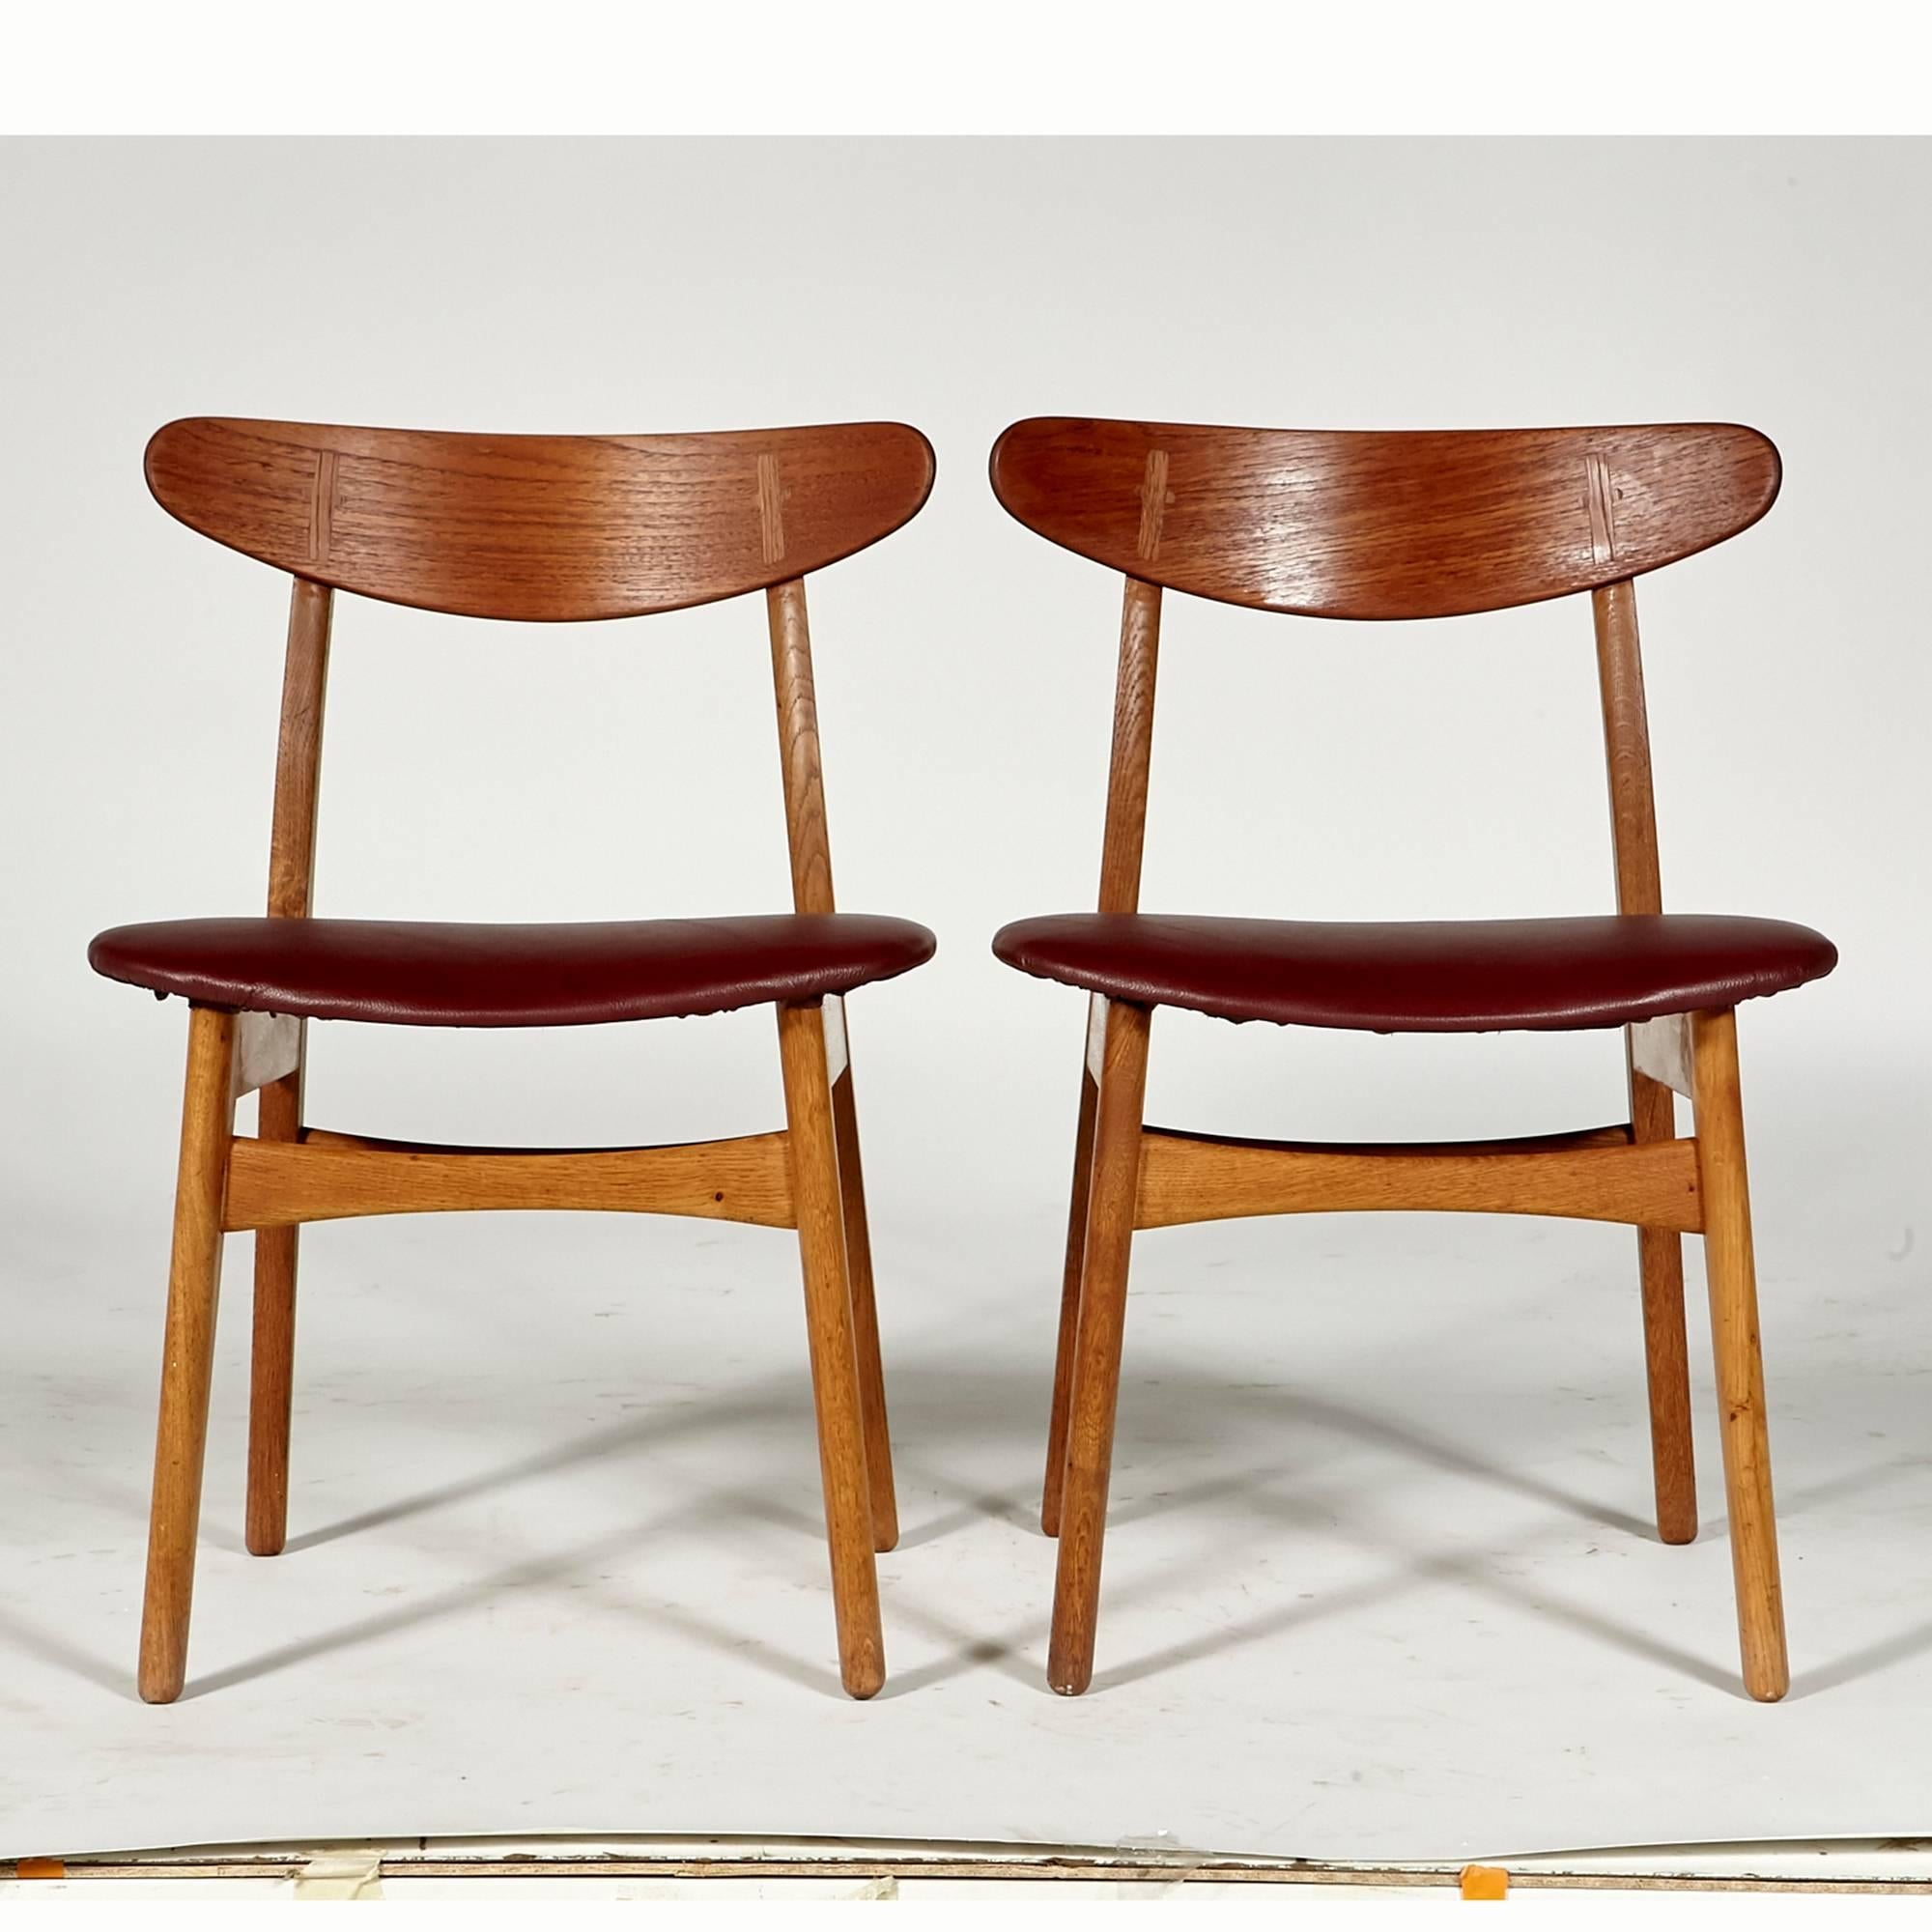 20th Century Hans J Wegner for Carl Hansen Teak Dining Chairs 1951 Denmark, Set of Six